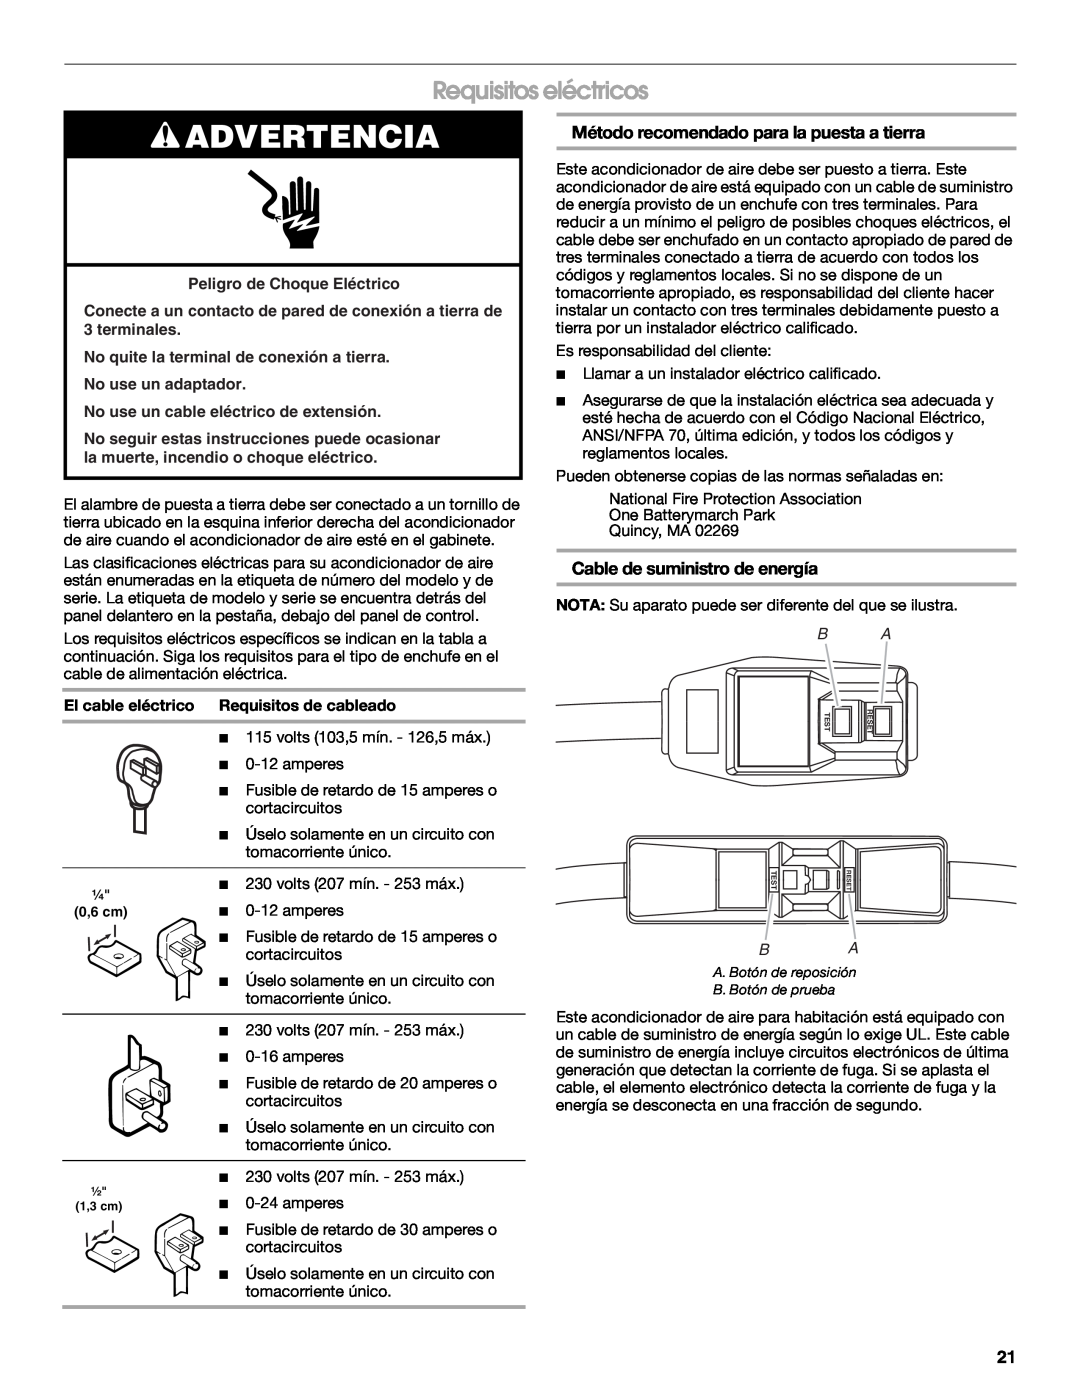 Whirlpool ACE184XR0 Advertencia, Requisitos eléctricos, Método recomendado para la puesta a tierra, No use un adaptador 